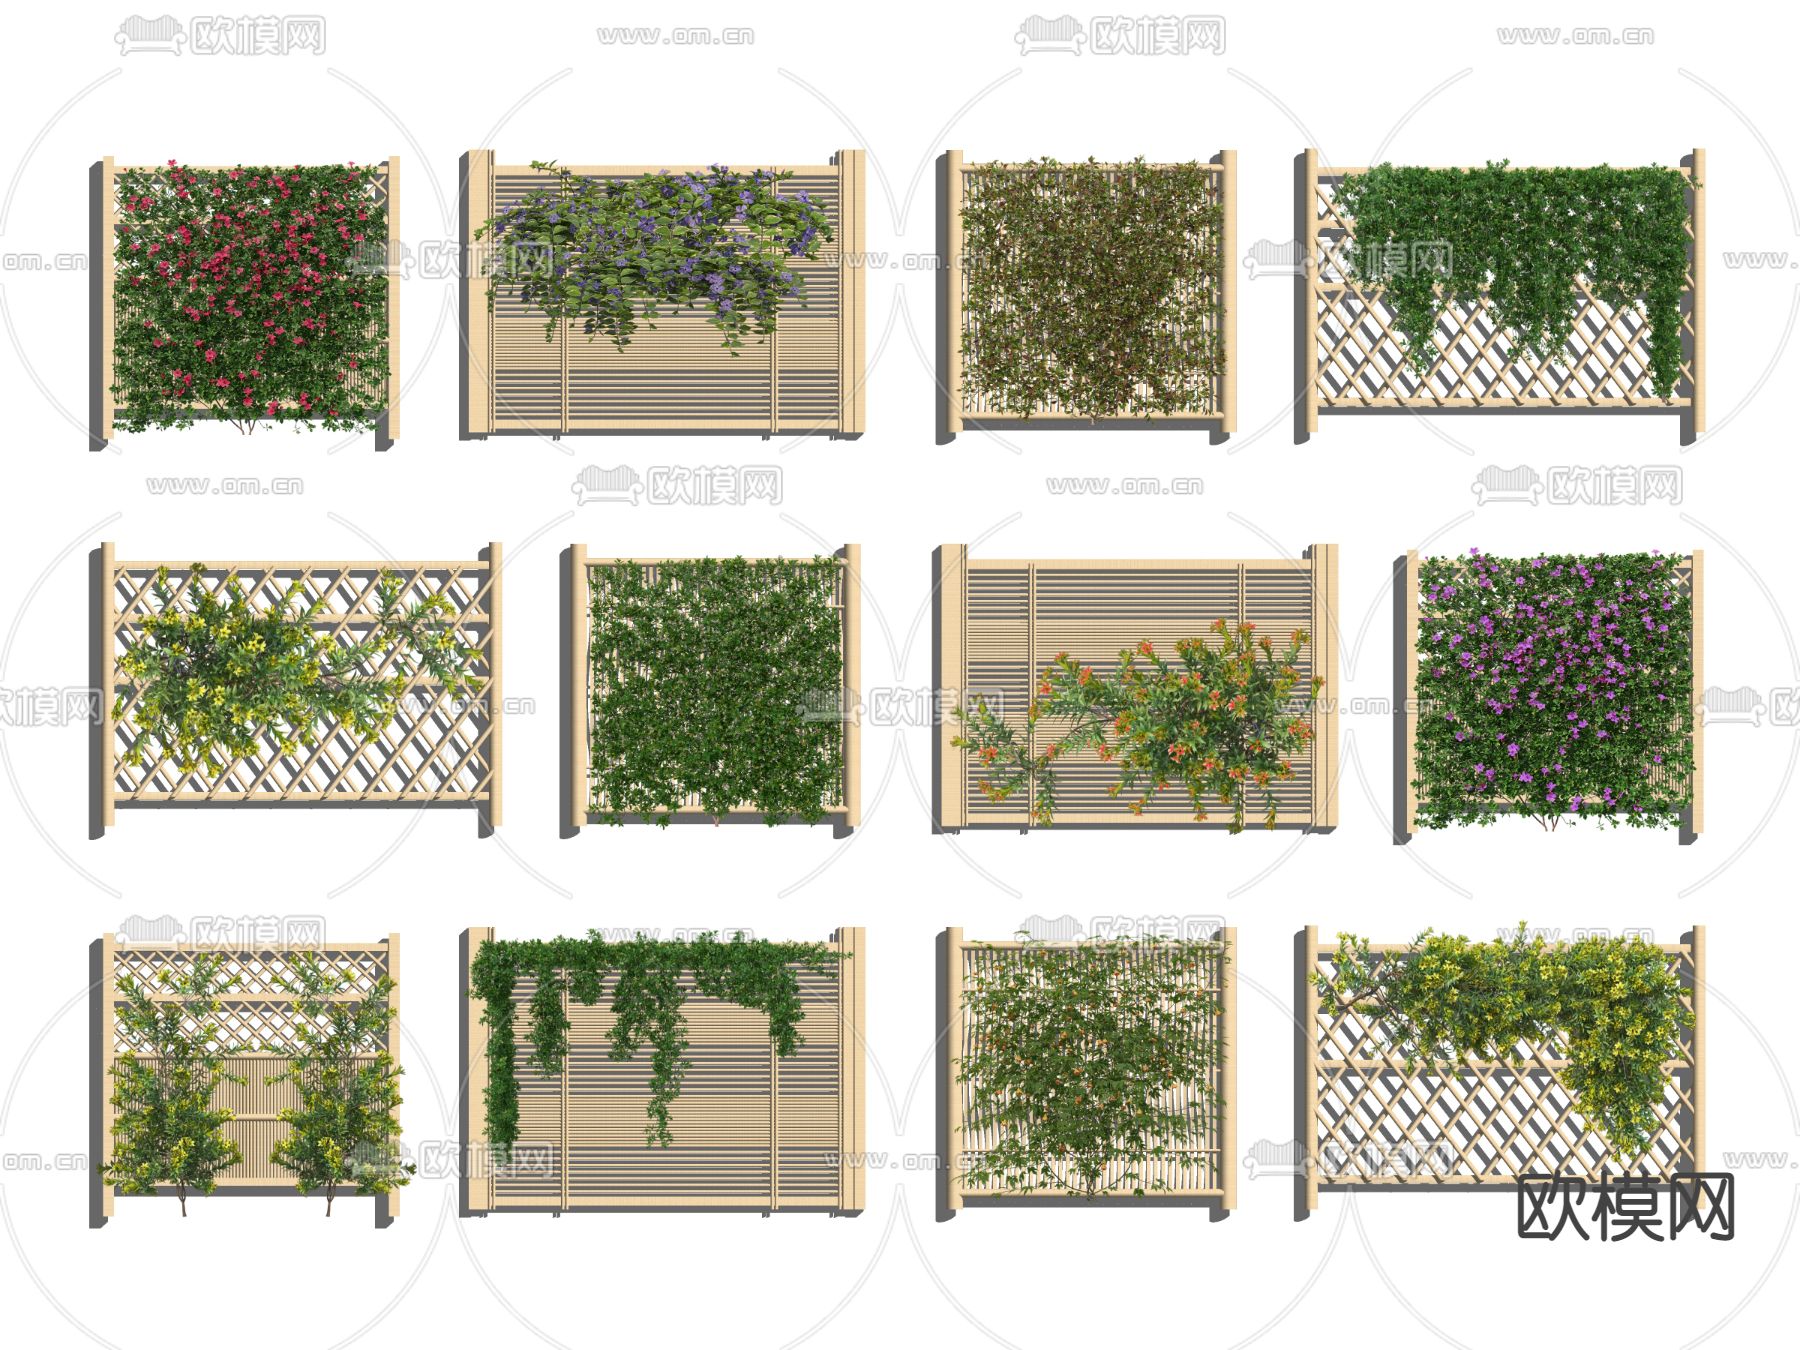 仿真叶子篱笆网人造篱笆叶树叶阳台庭院栅栏绿叶装饰藤条假植物-阿里巴巴